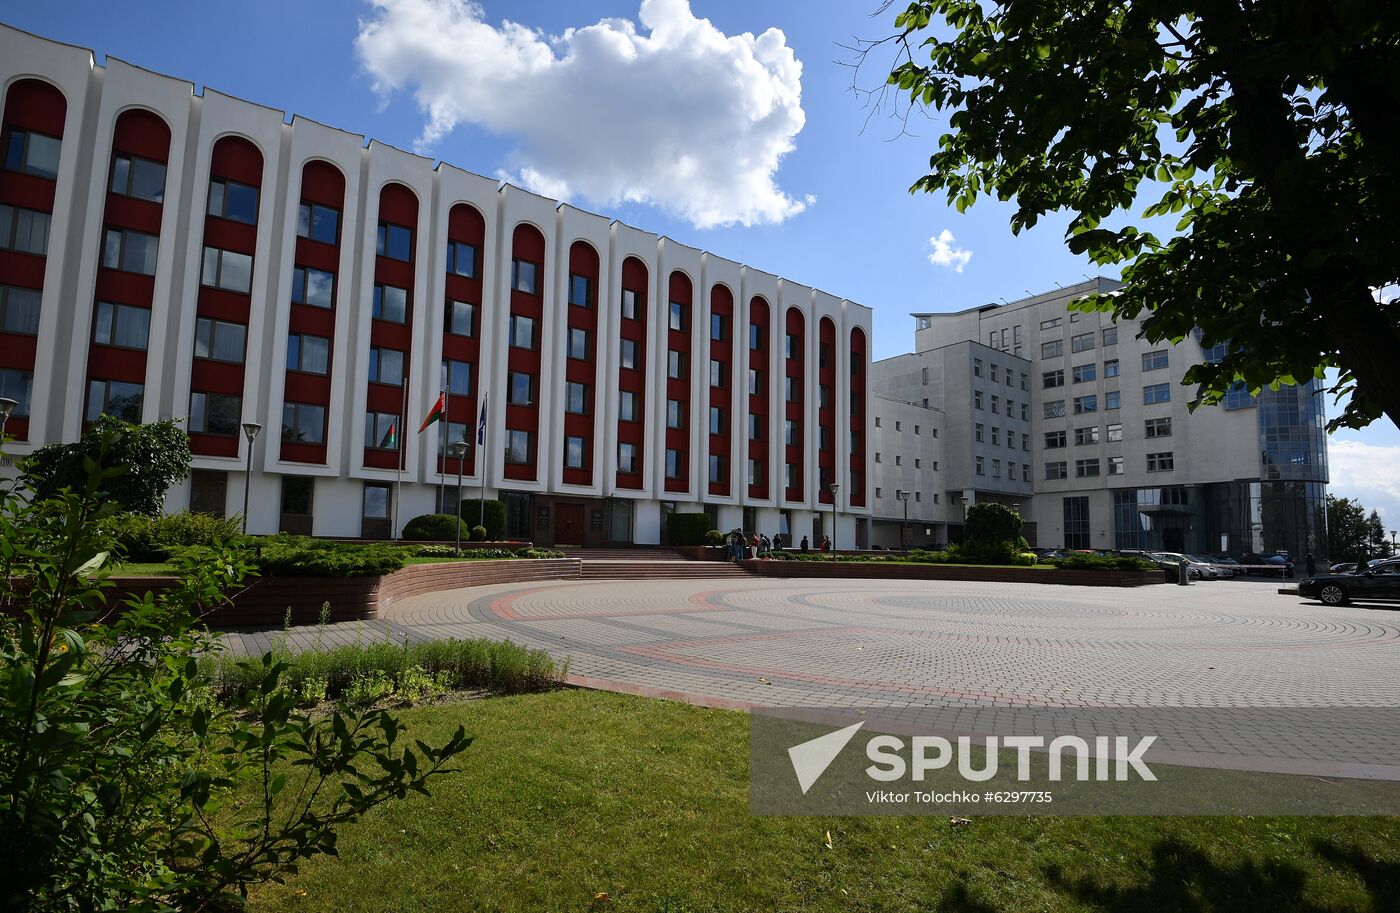 Belarus Russia Contractors Detention